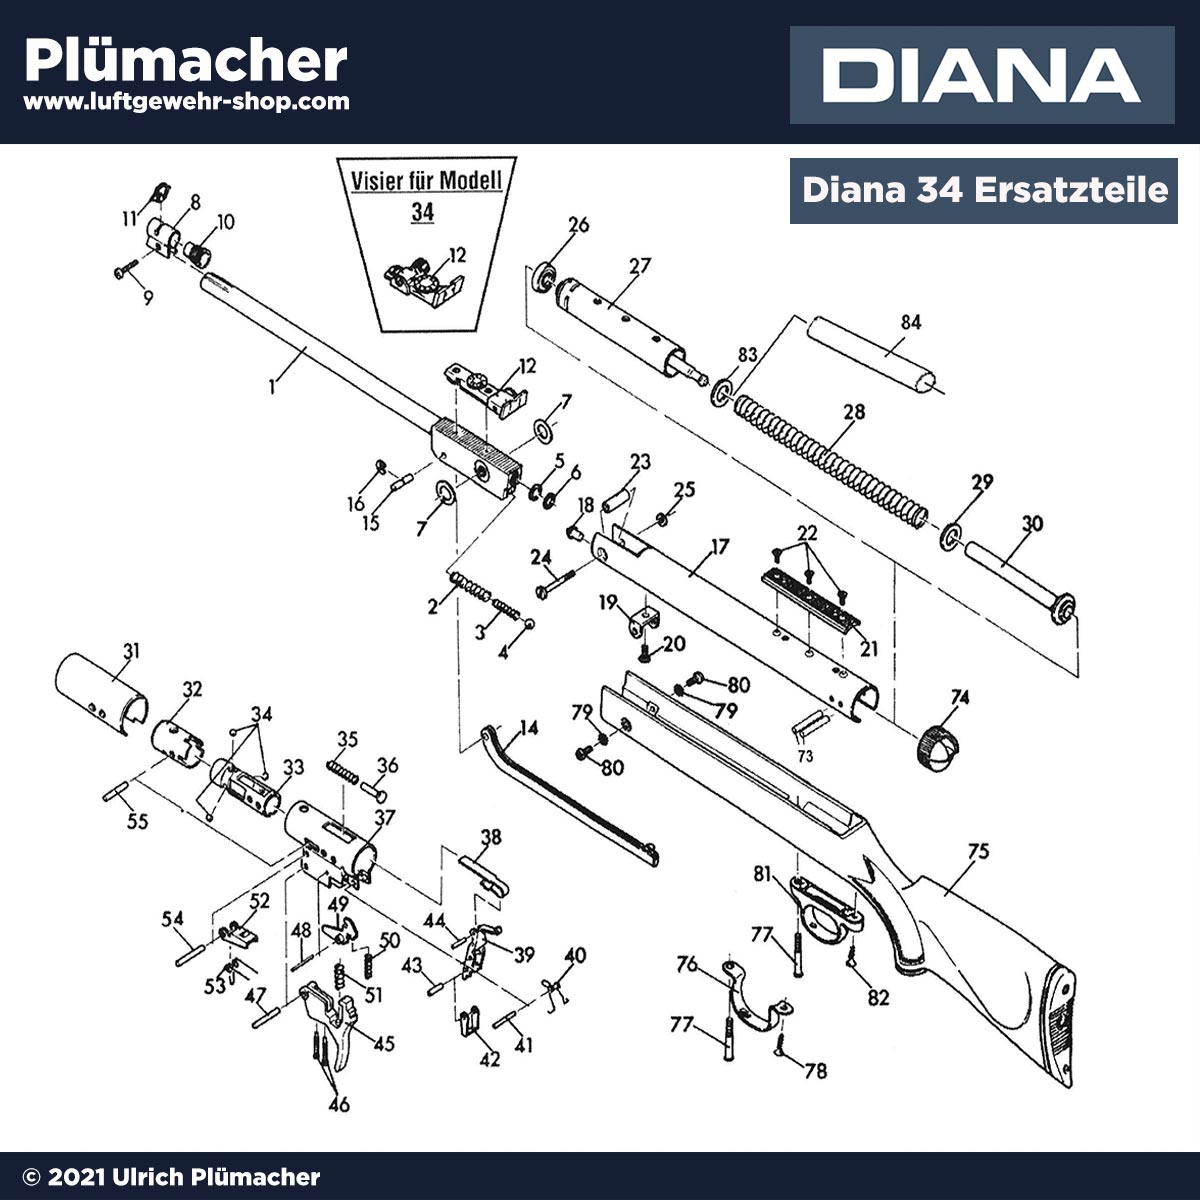 Diana 34 Ersatzteile - Bauplan, Explosionszeichnung und Ersatzteile  für das Luftgewehr Diana 34